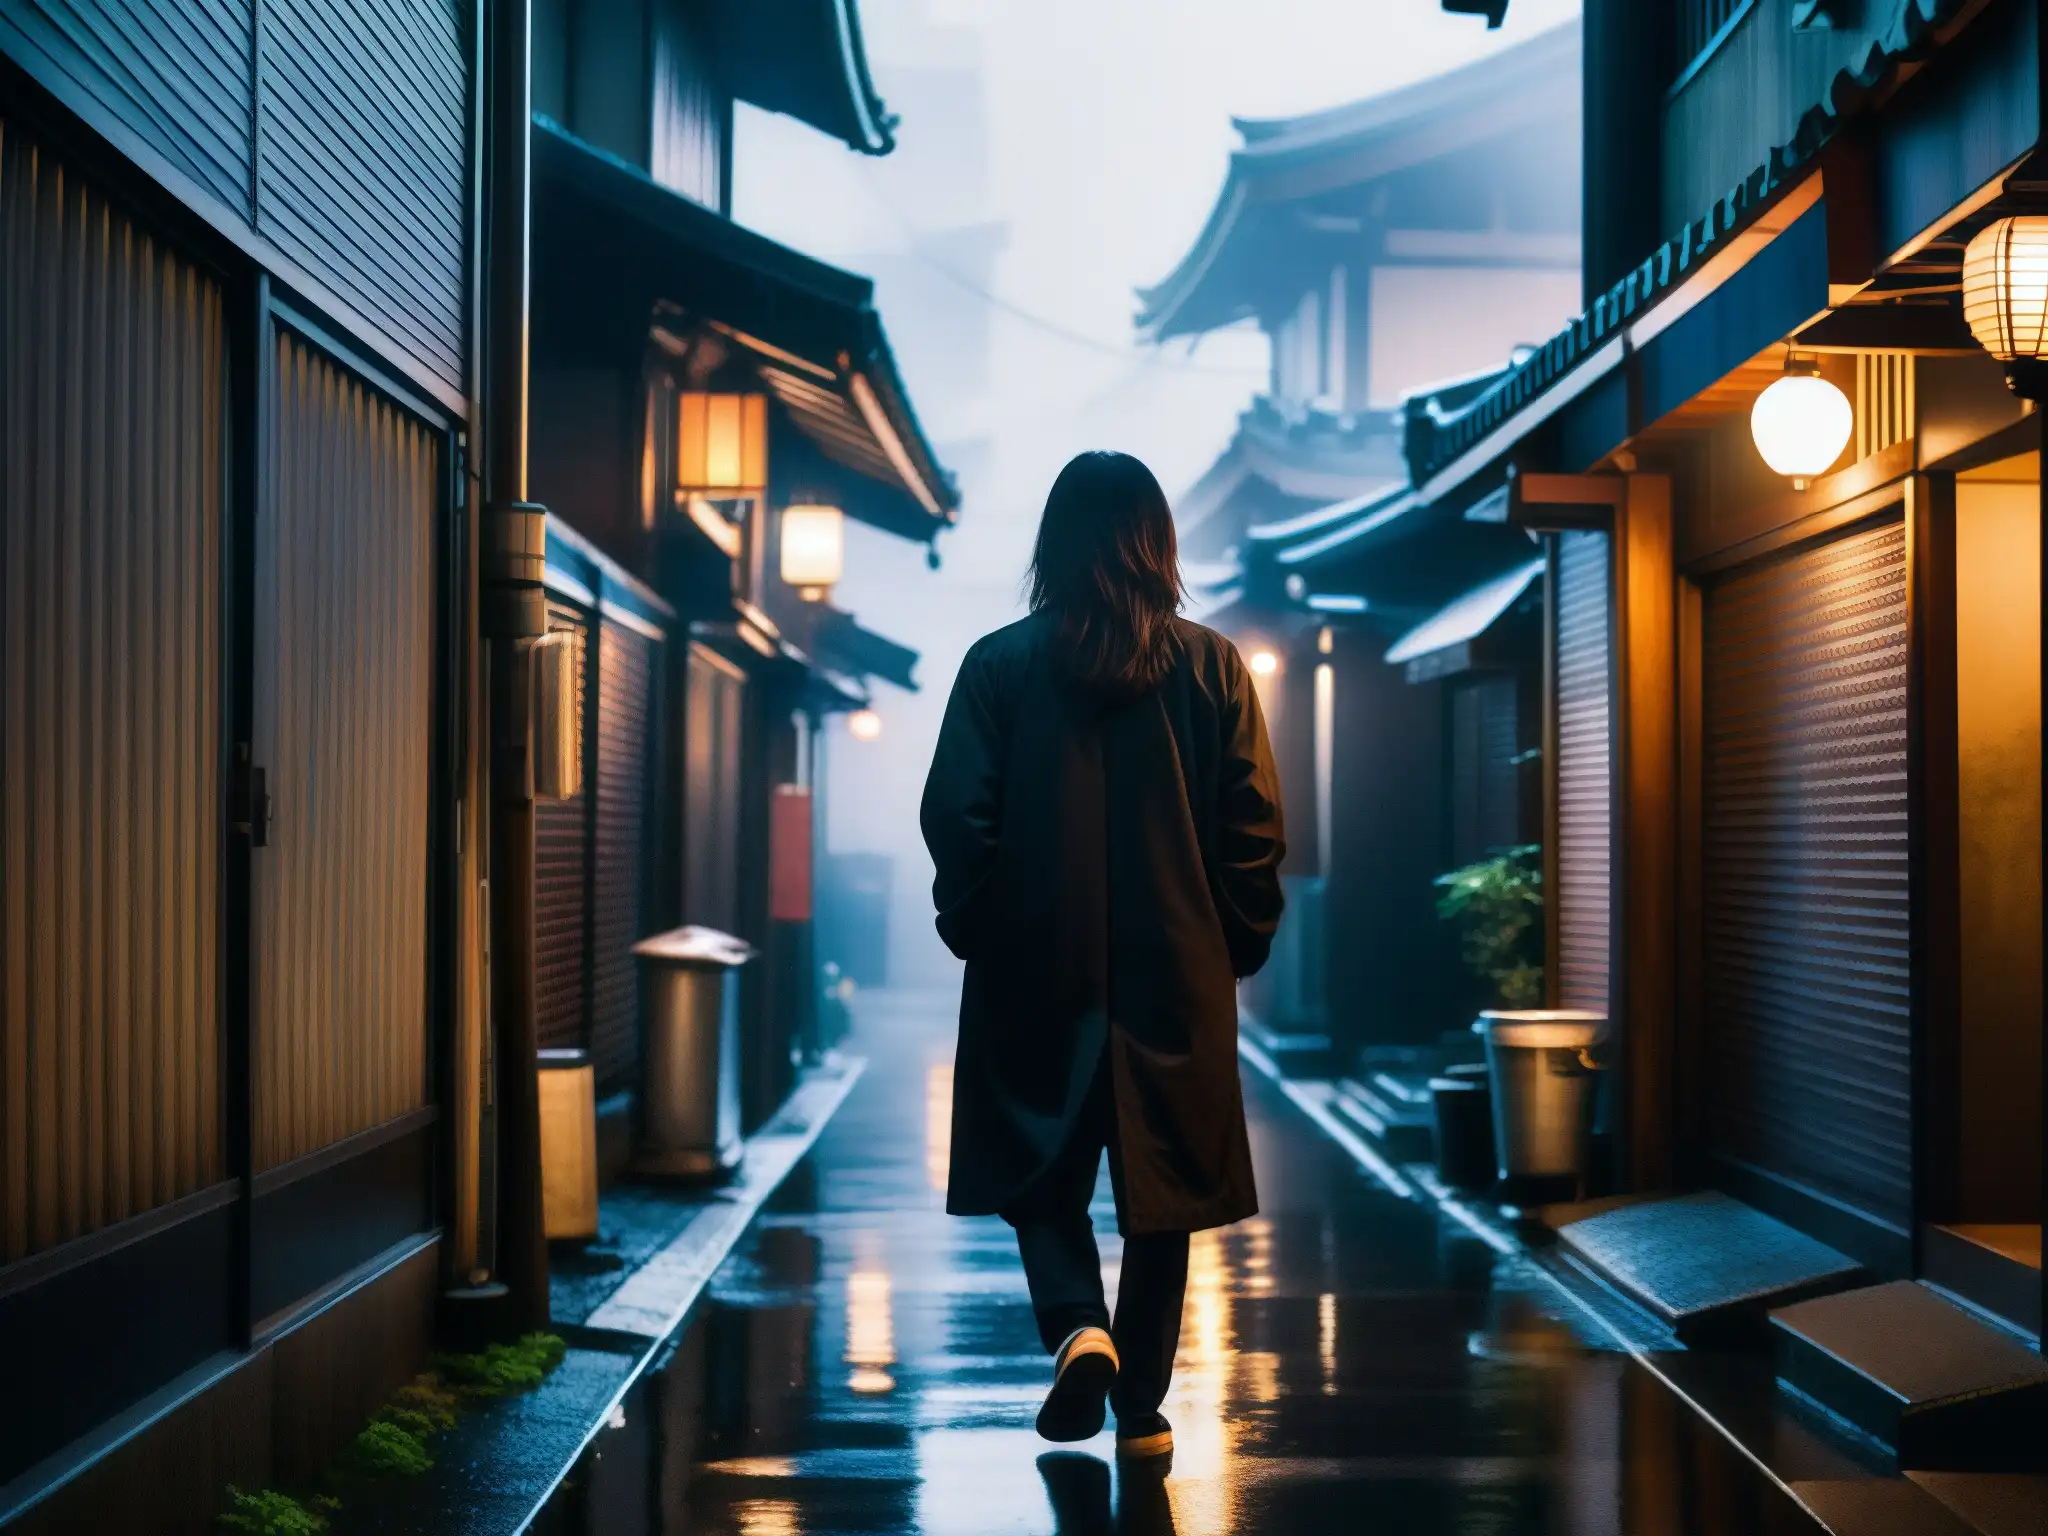 Alleyway urbano en Japón con neblina, figuras anónimas y la leyenda urbana de TekeTeke